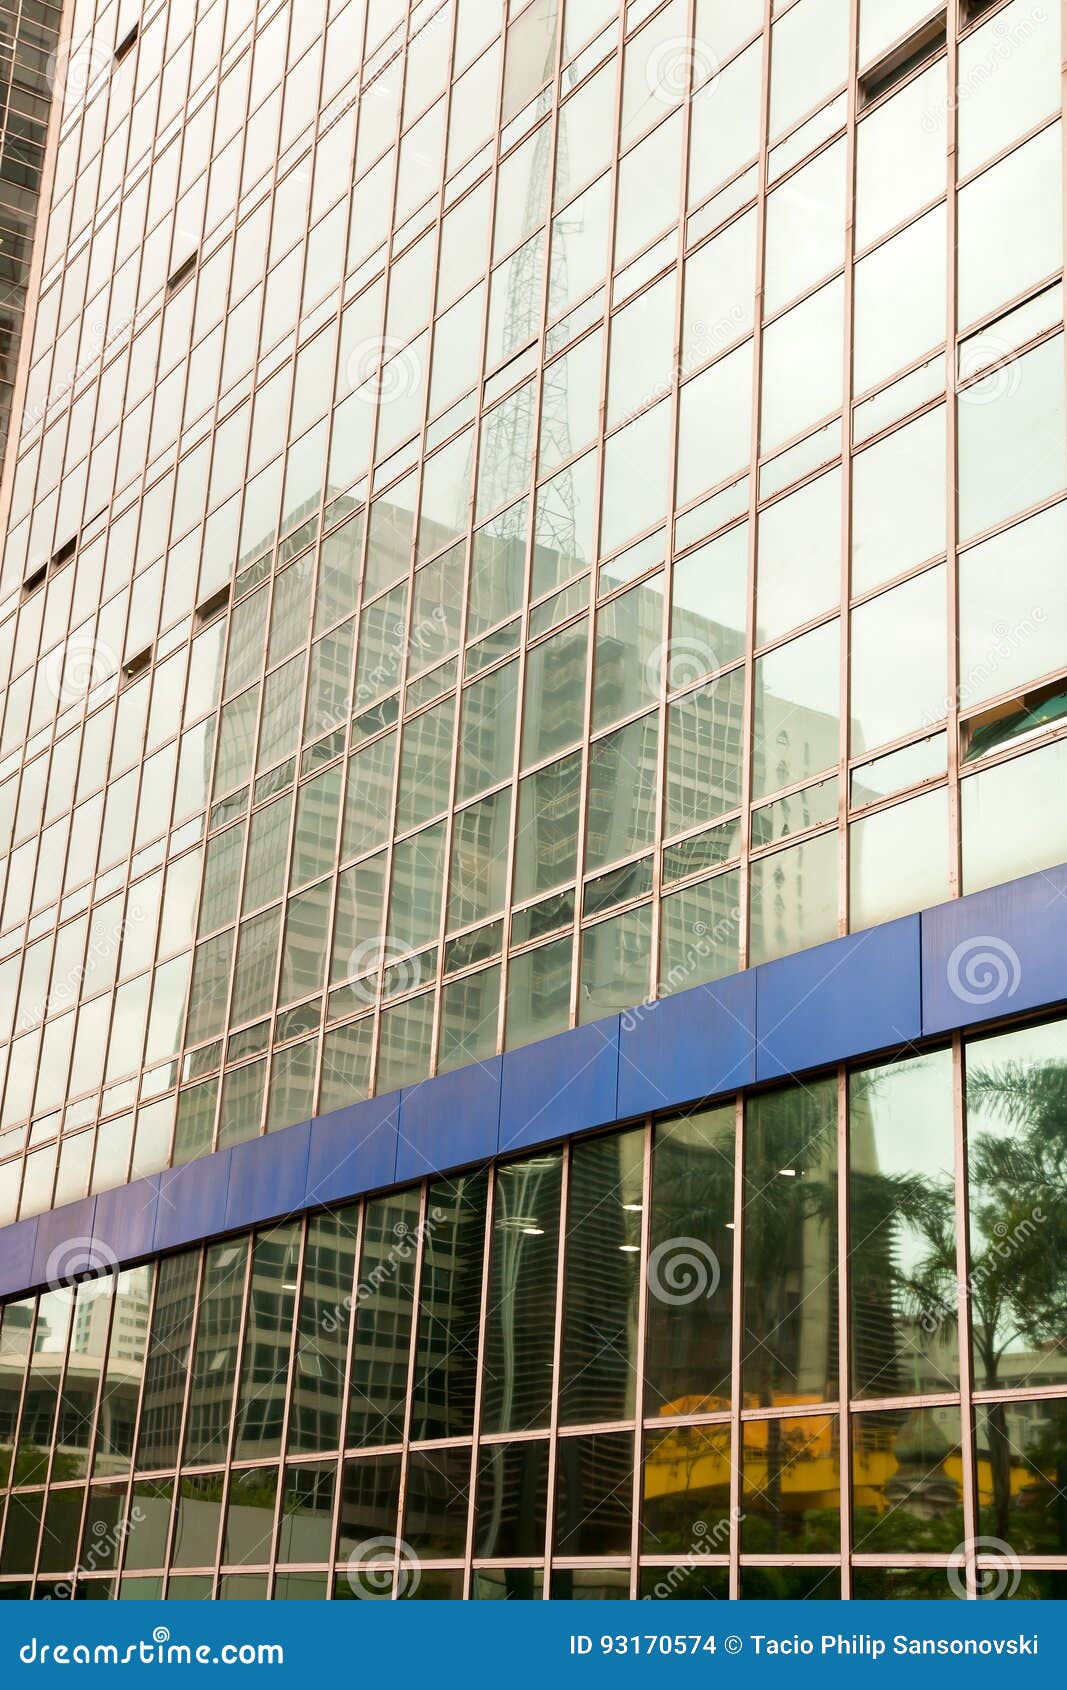 skycraper reflextion on a modern glass building